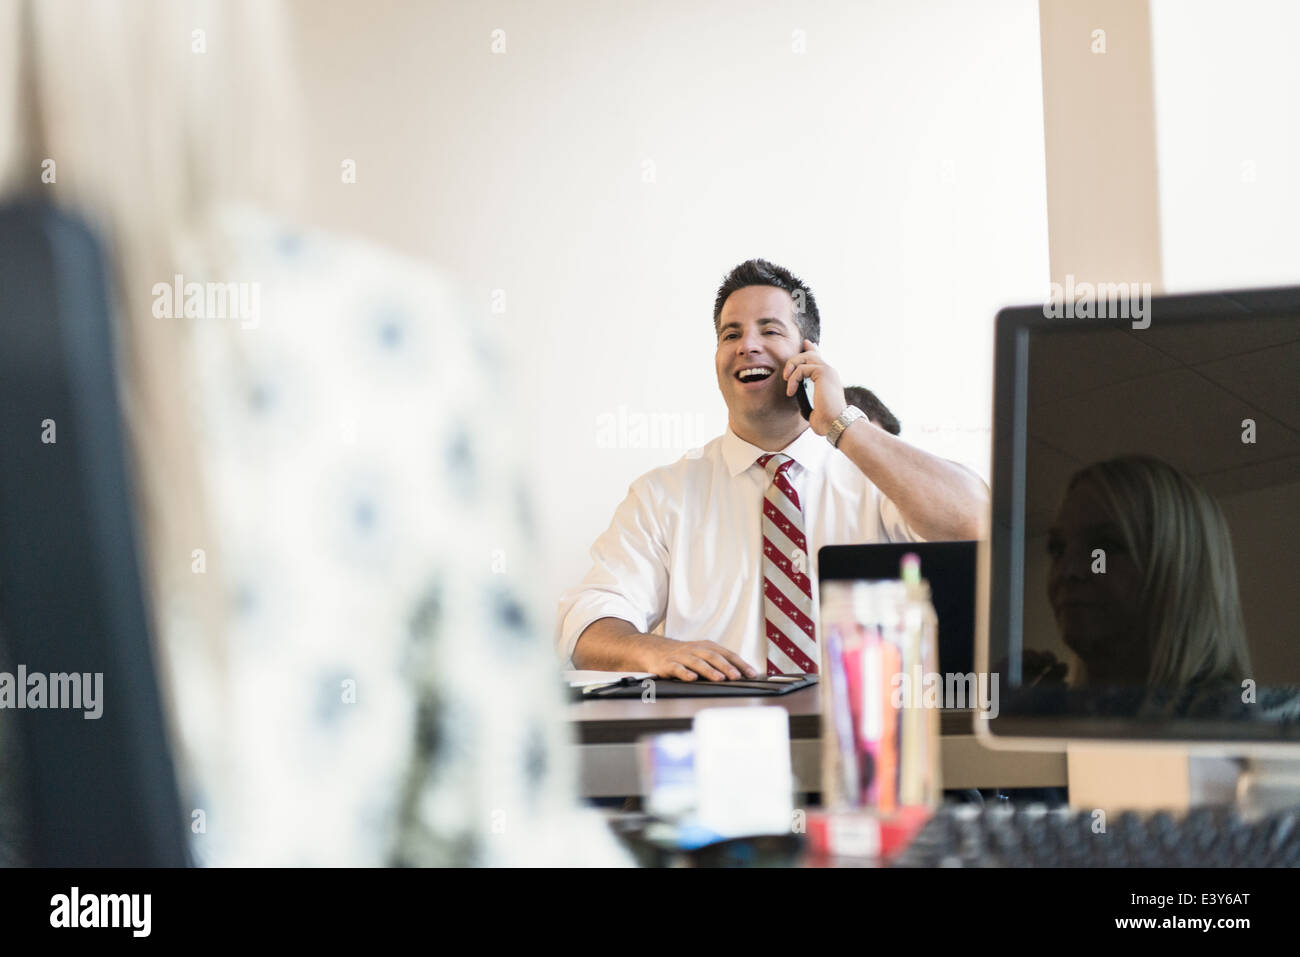 Business Lawyer chattare su smartphone in ufficio Foto Stock